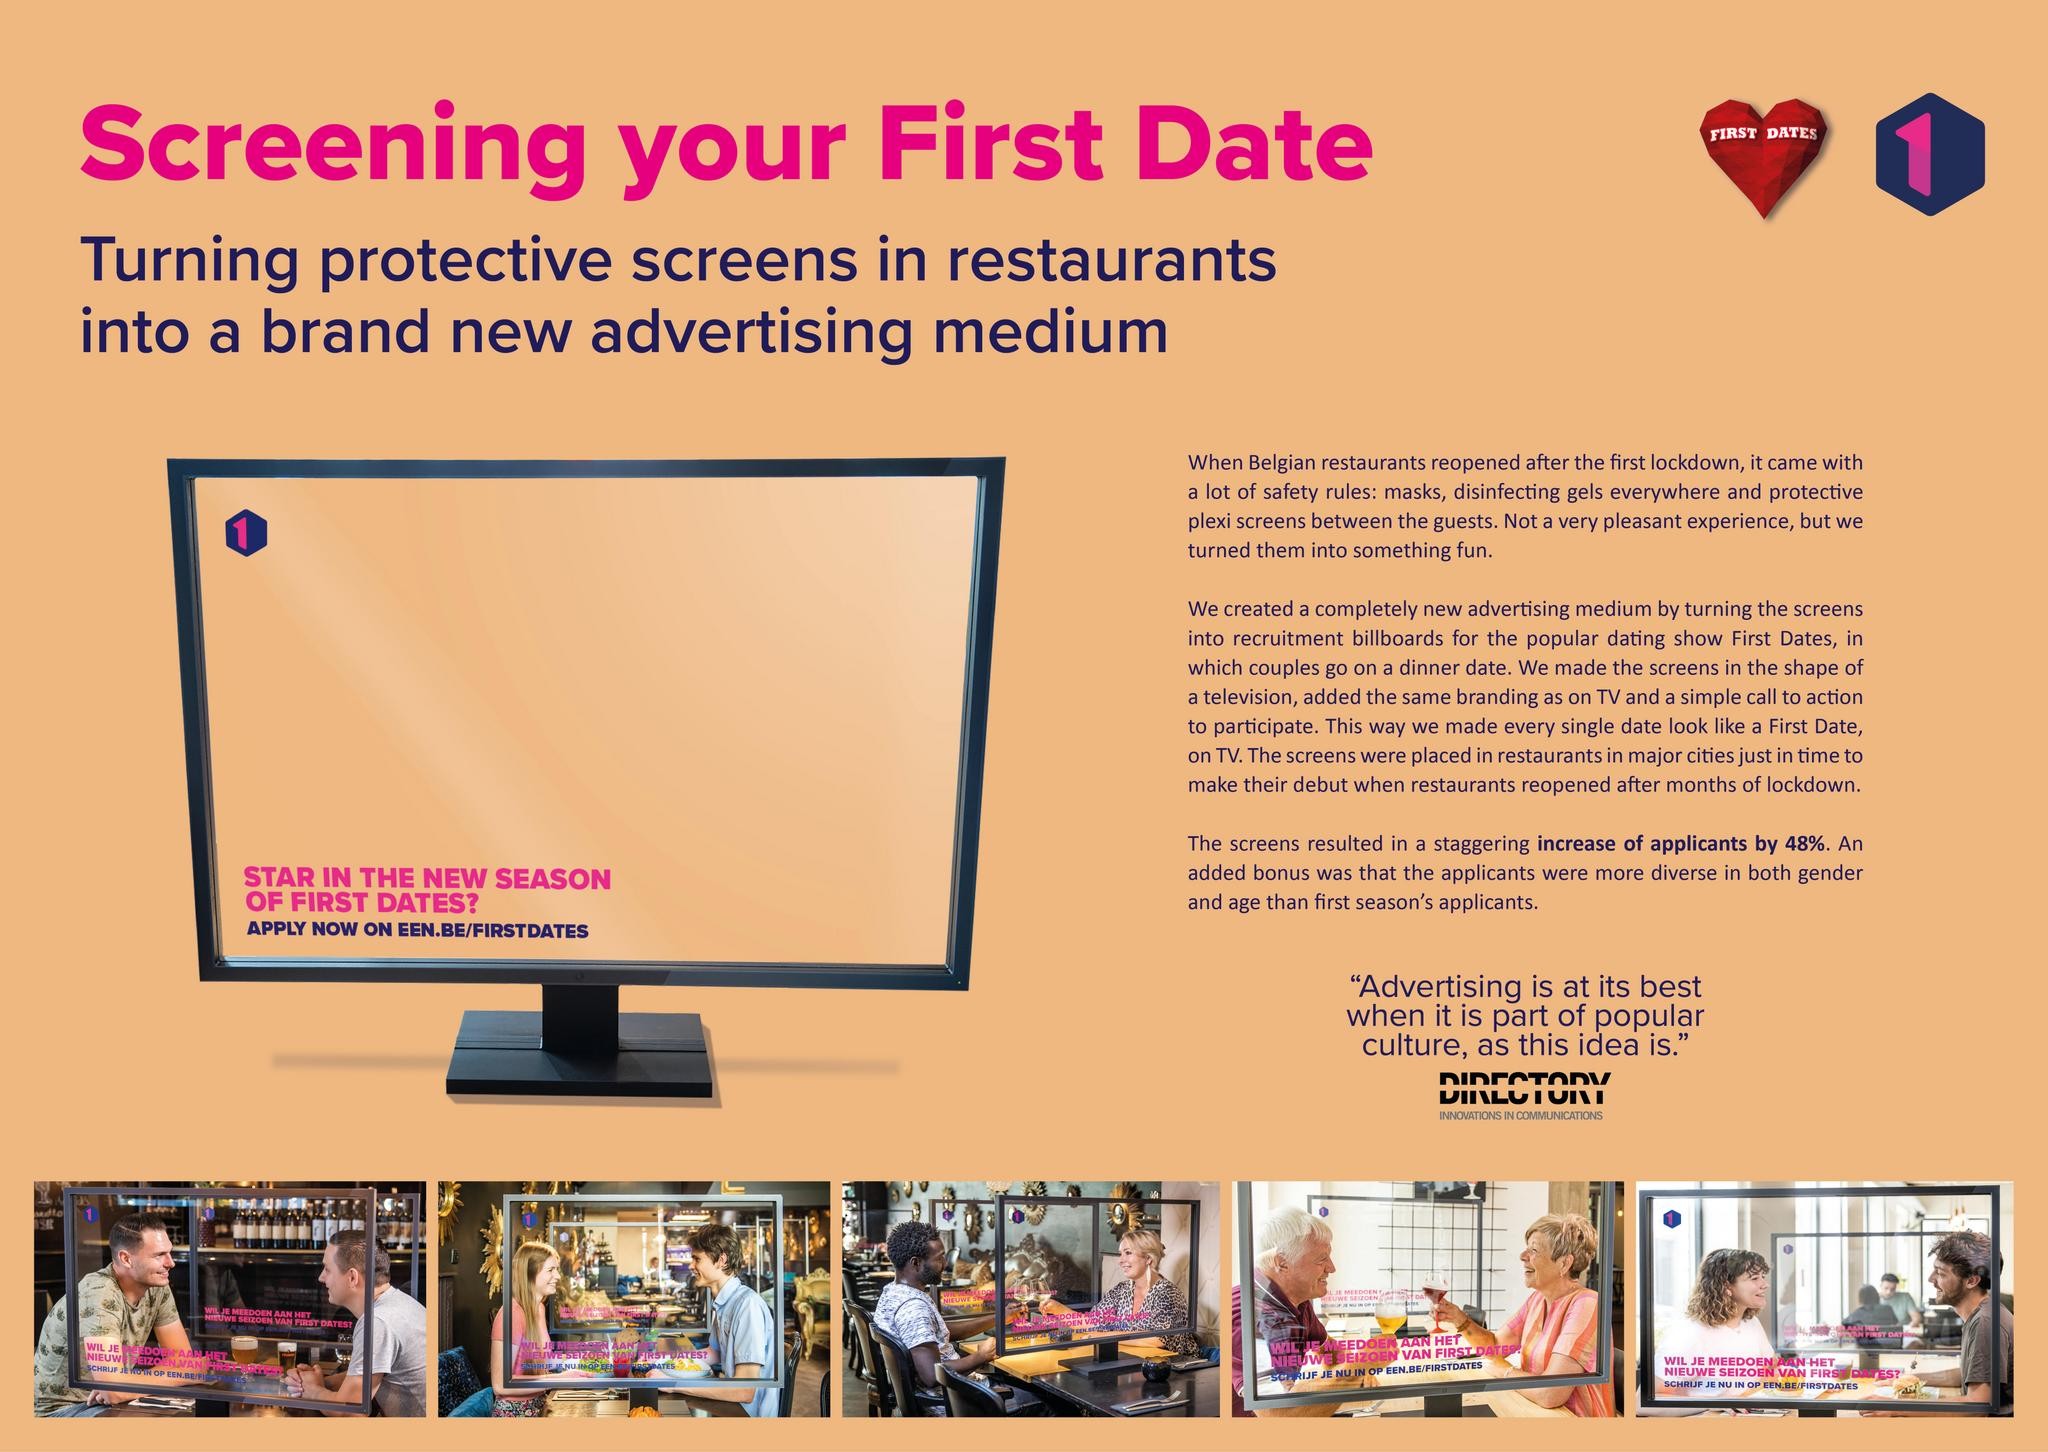 First Date screening